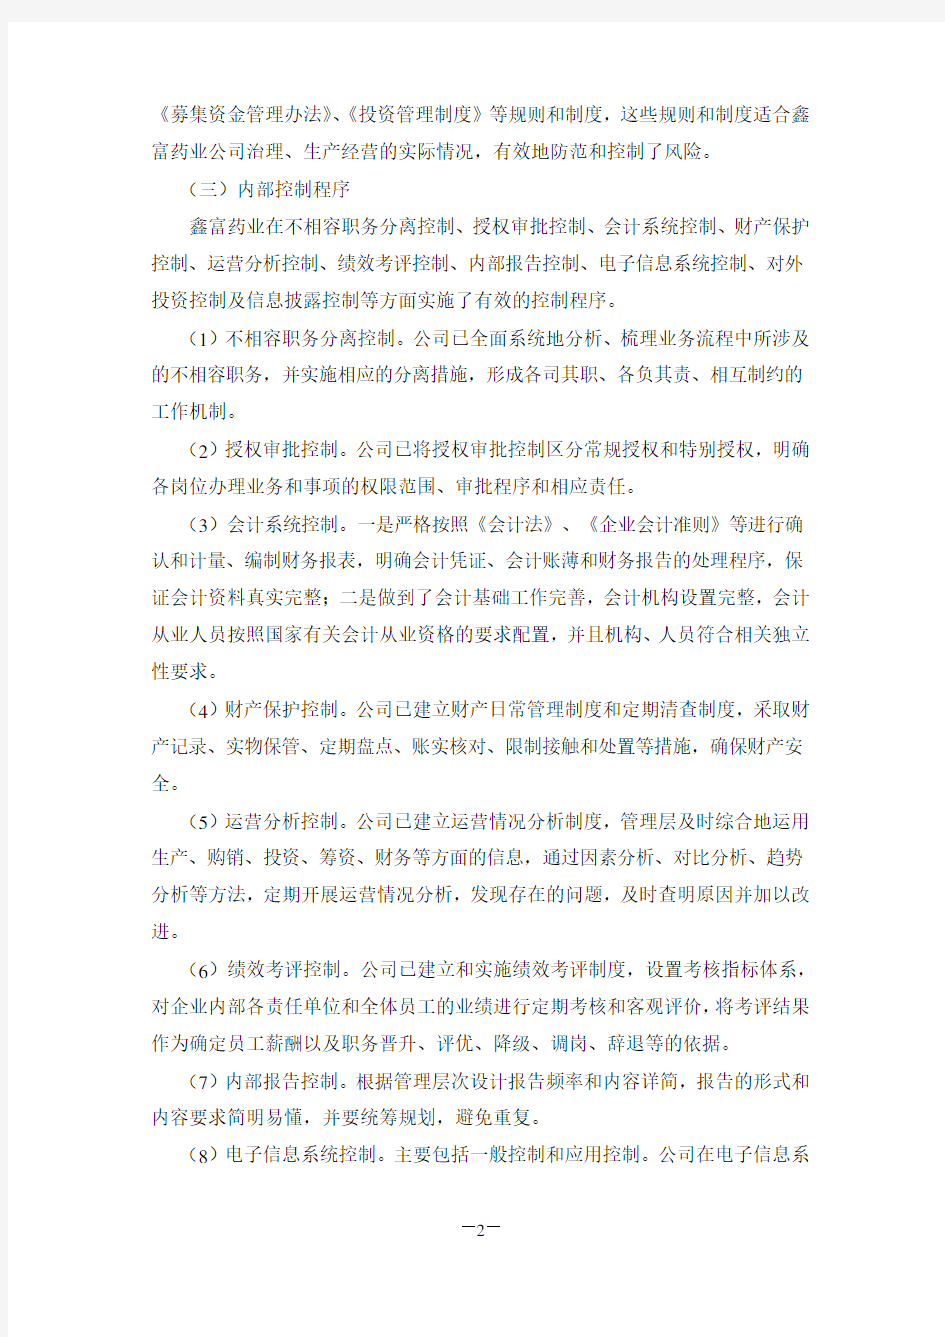 浙商证券有限责任公司对浙江杭州鑫富药业股份有限公司内部控制自我评价报告的核查意见